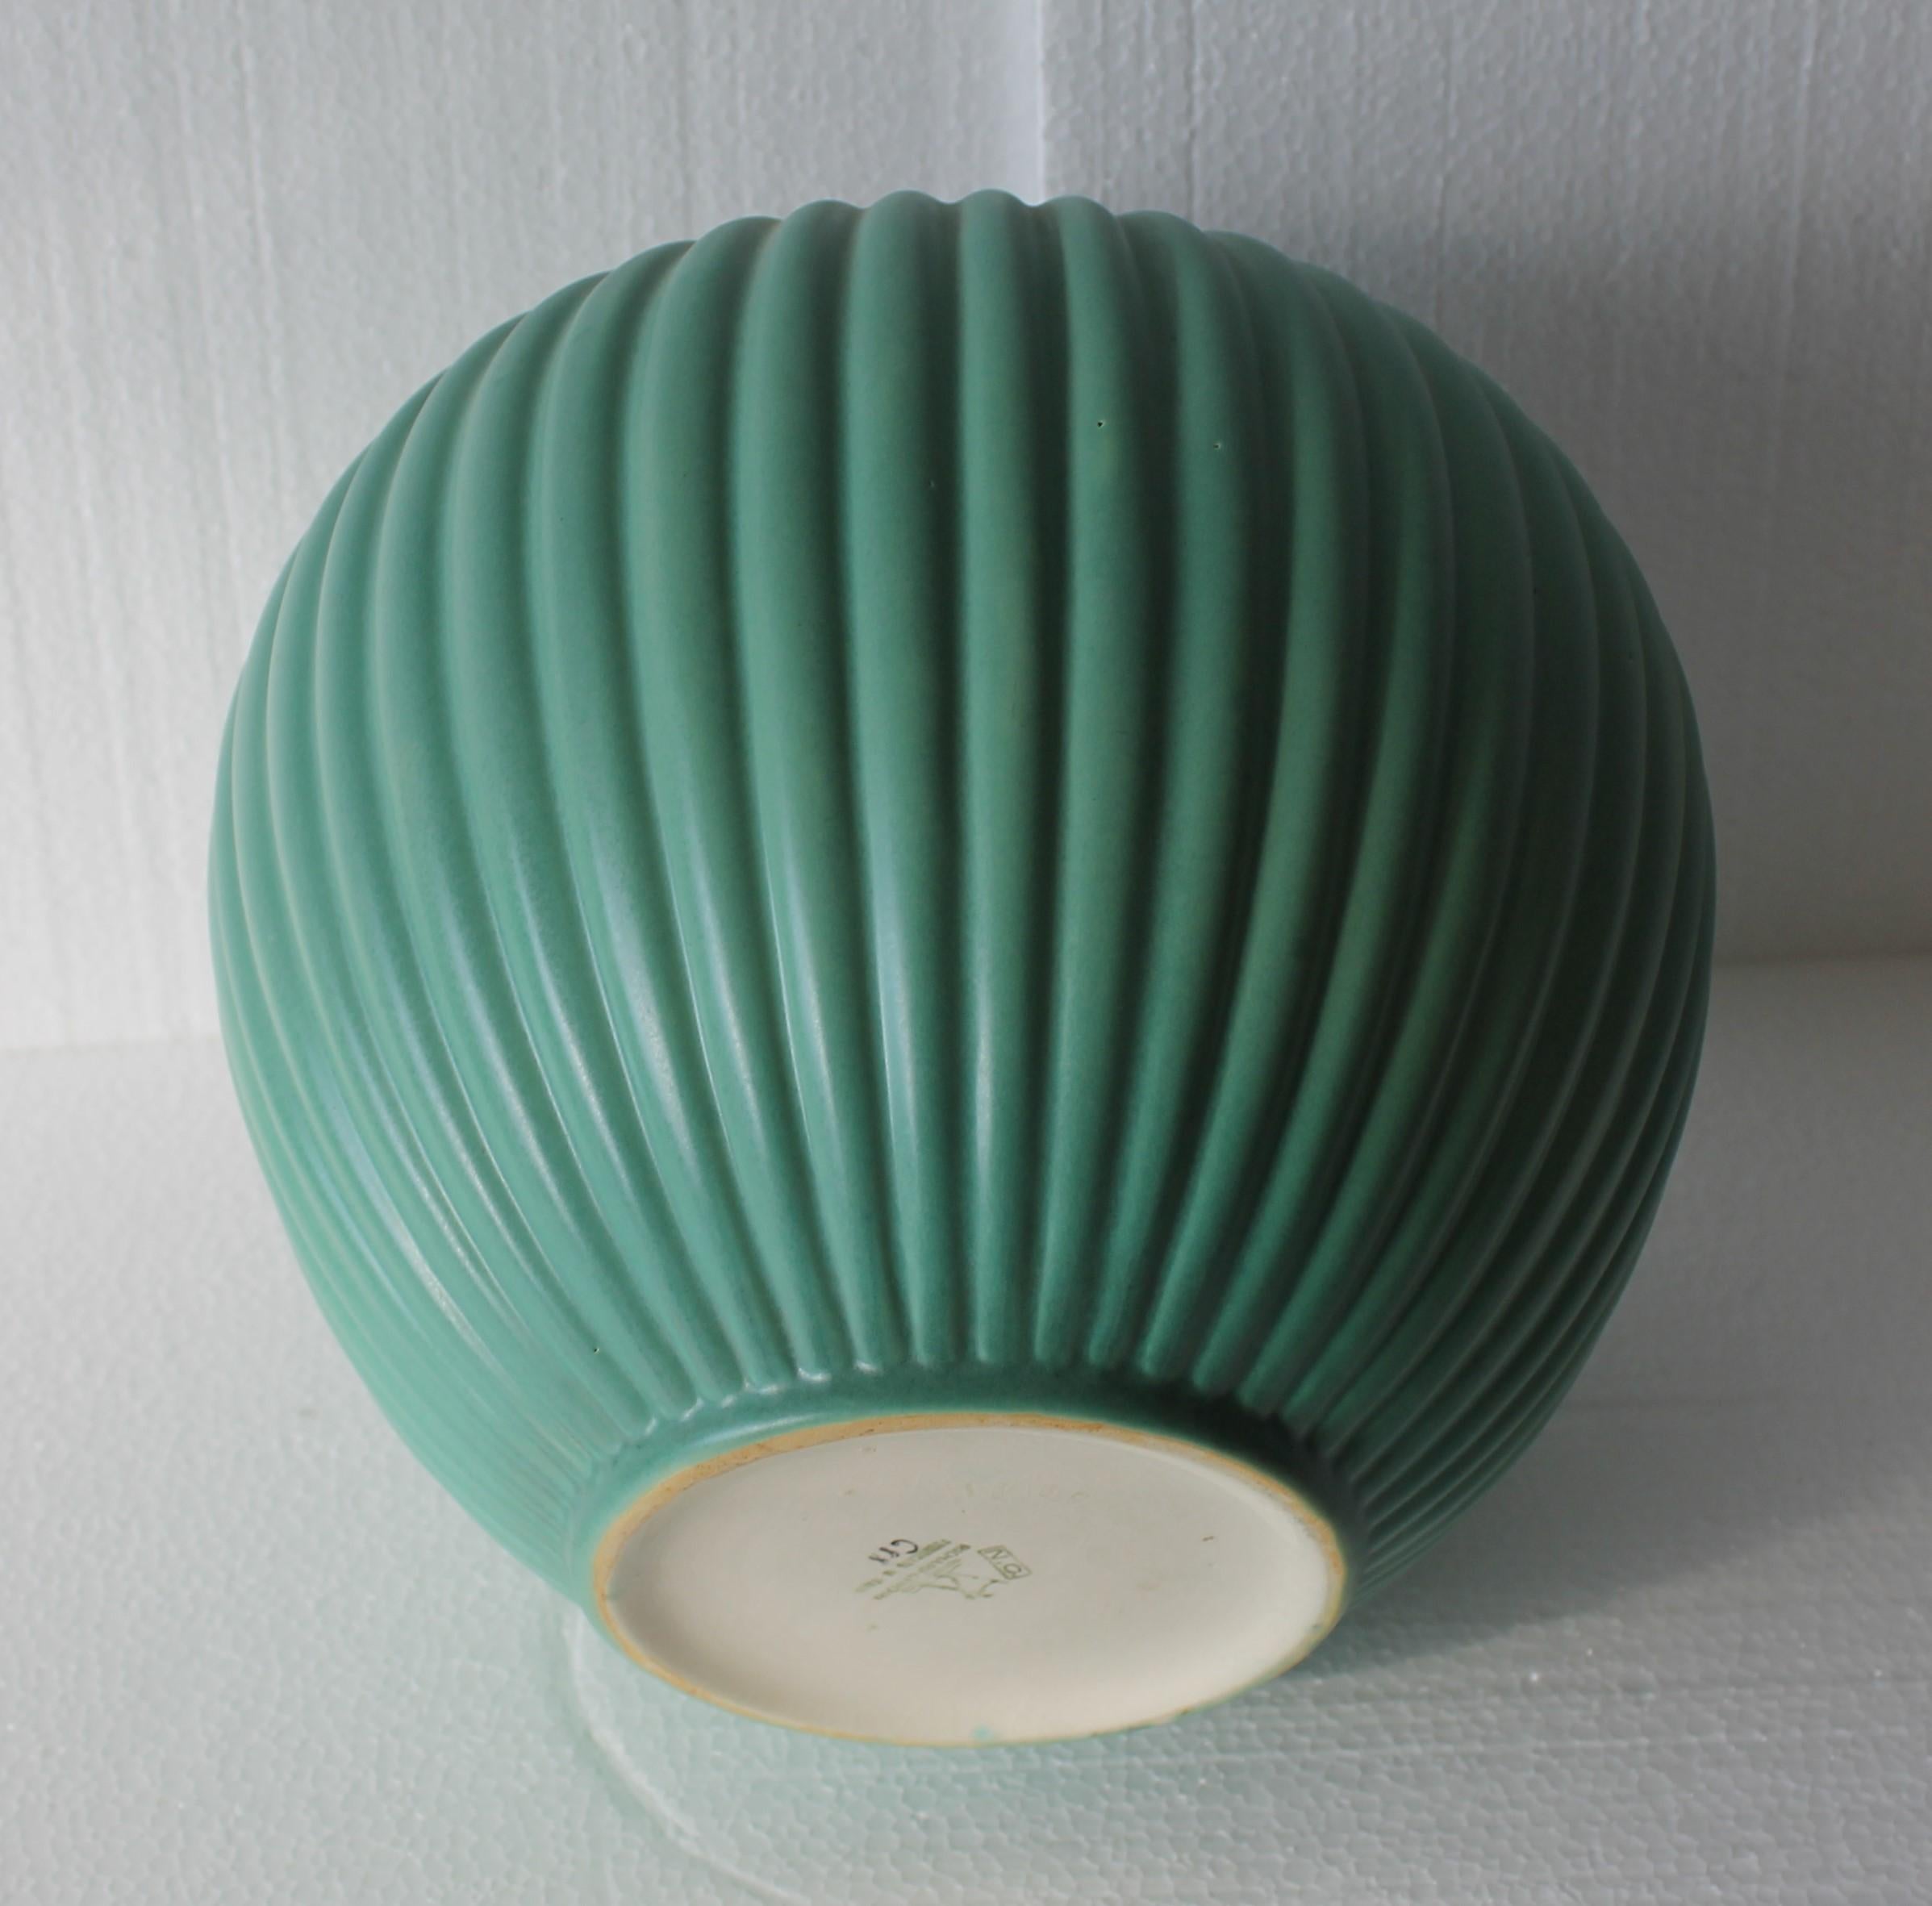 Italian Richard Ginori Green Ceramic Vase by Giovanni Gariboldi, Italy 1950s